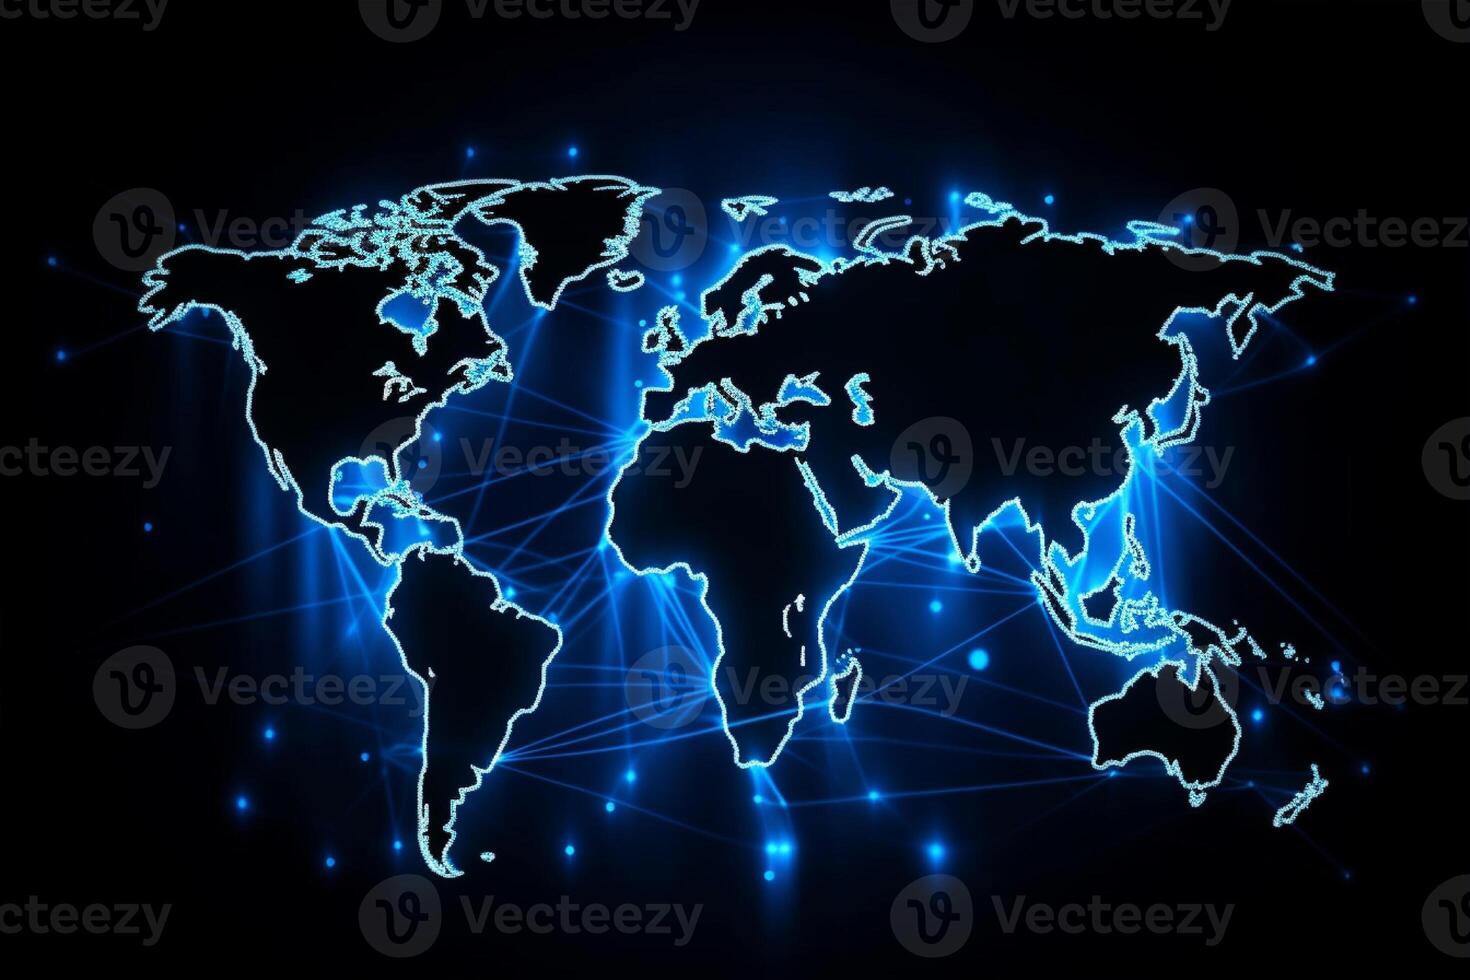 monde carte avec global La technologie social lien réseau avec lumières et points photo